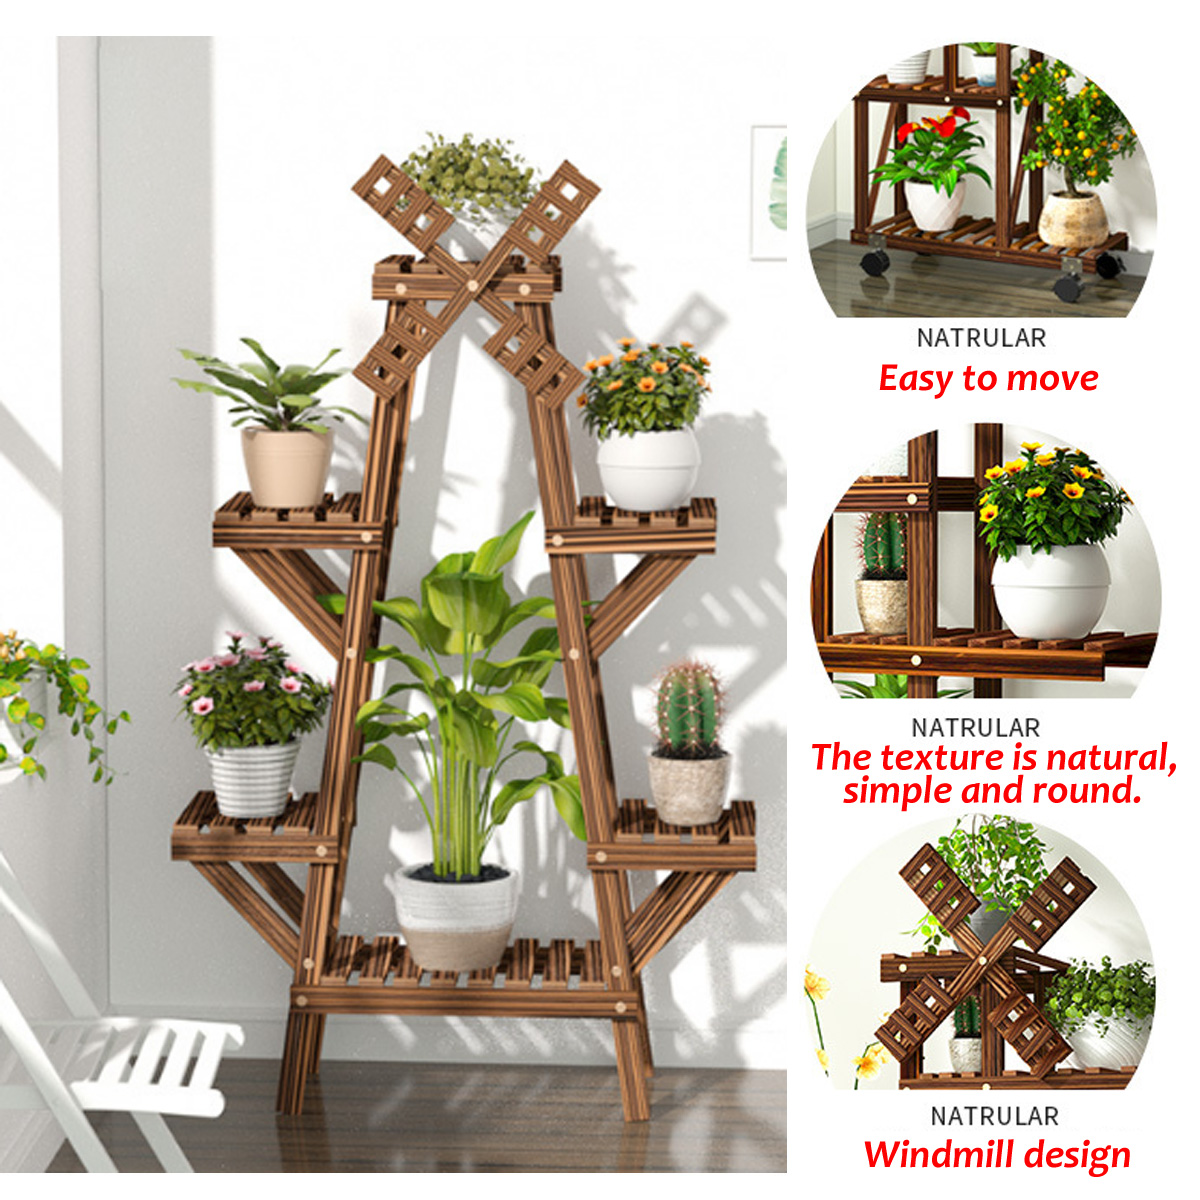 Wooden-Succulent-Flower-Pot-Shelf-Rack-Multi-Layer-Solid-Wood-Floor-Indoor-Living-1608467